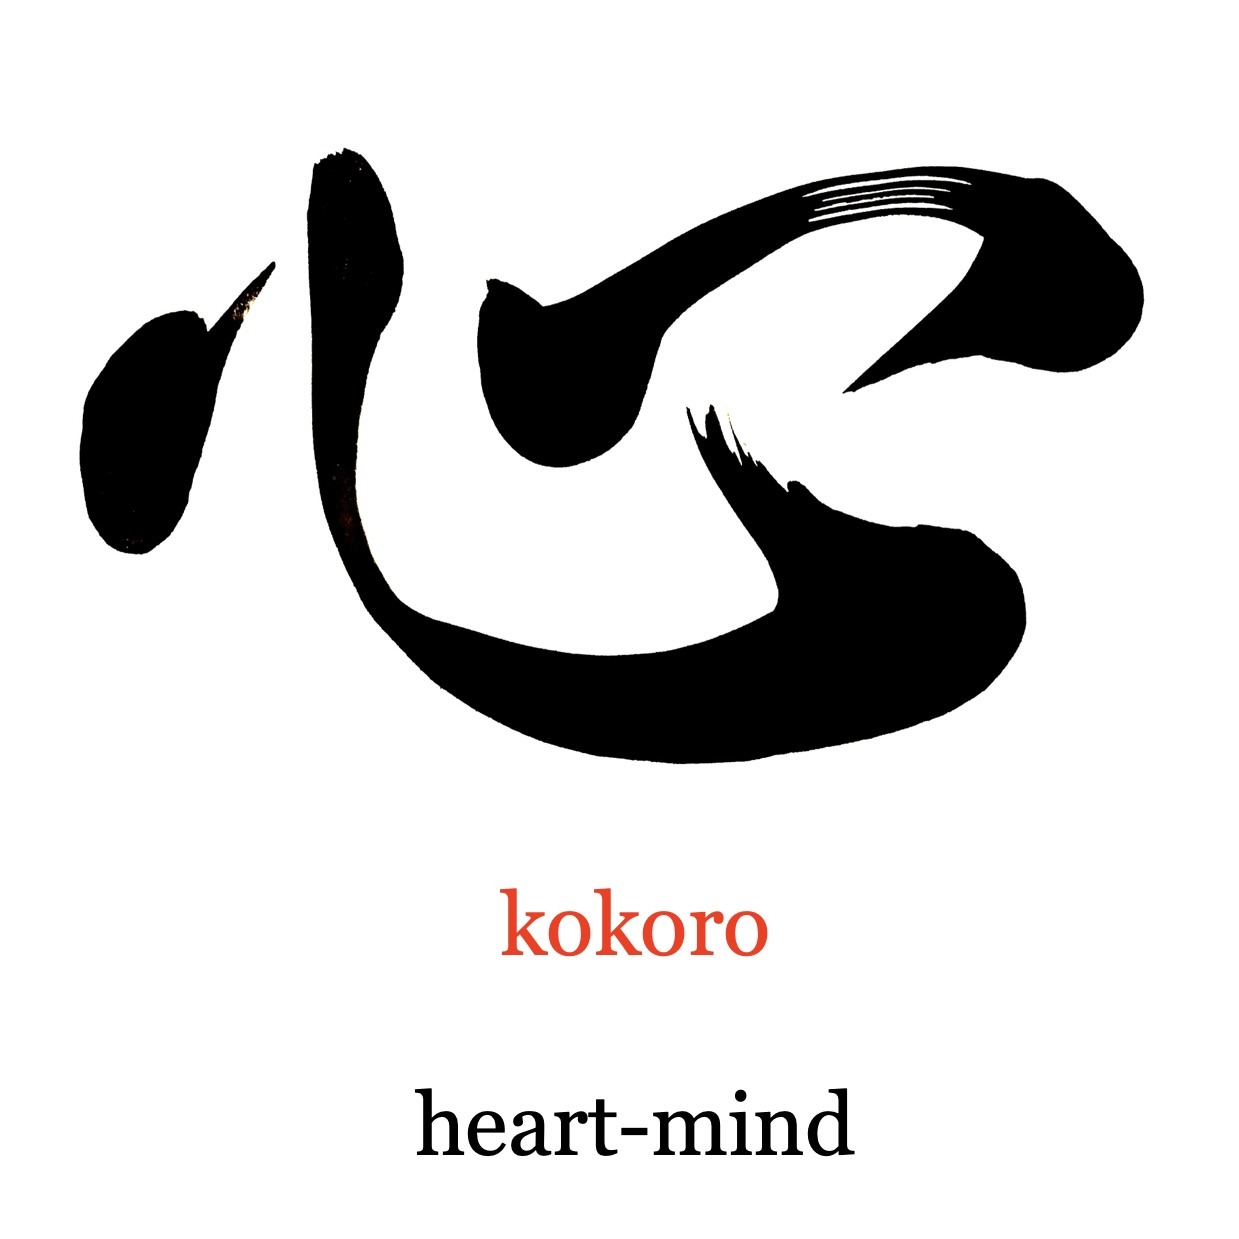 How to pronounce Kokoro